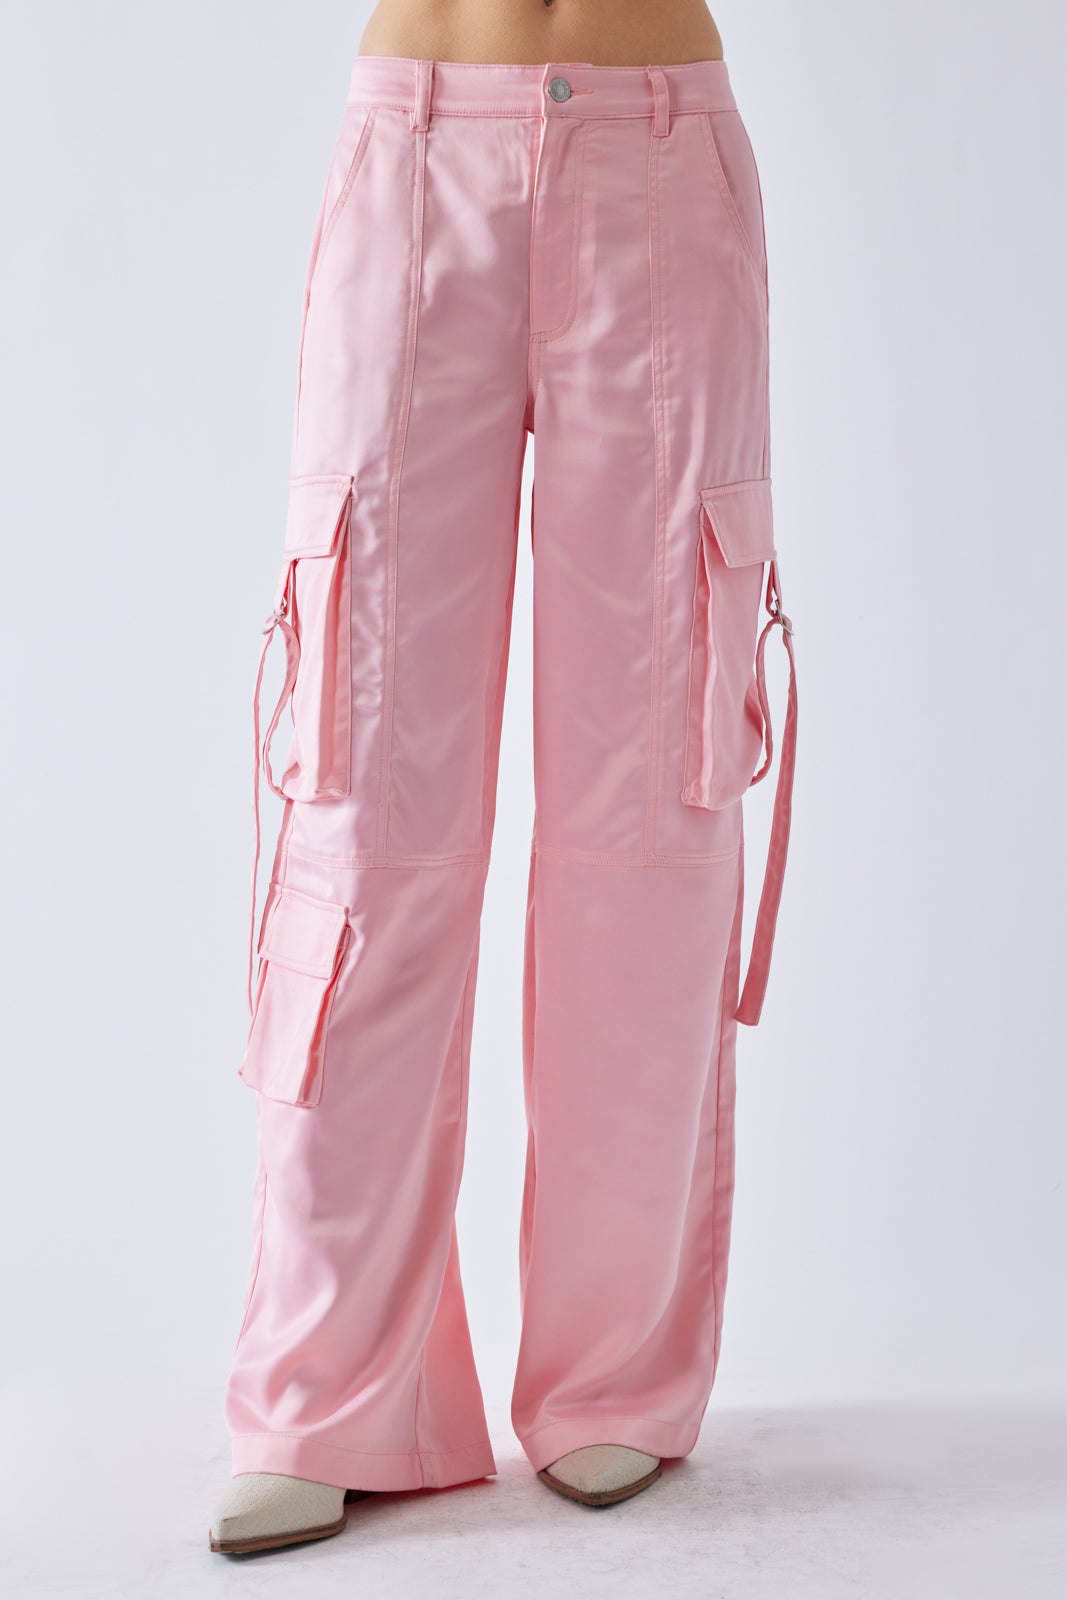 Hot Pink Woven Pocket High Waist Cargo Pants